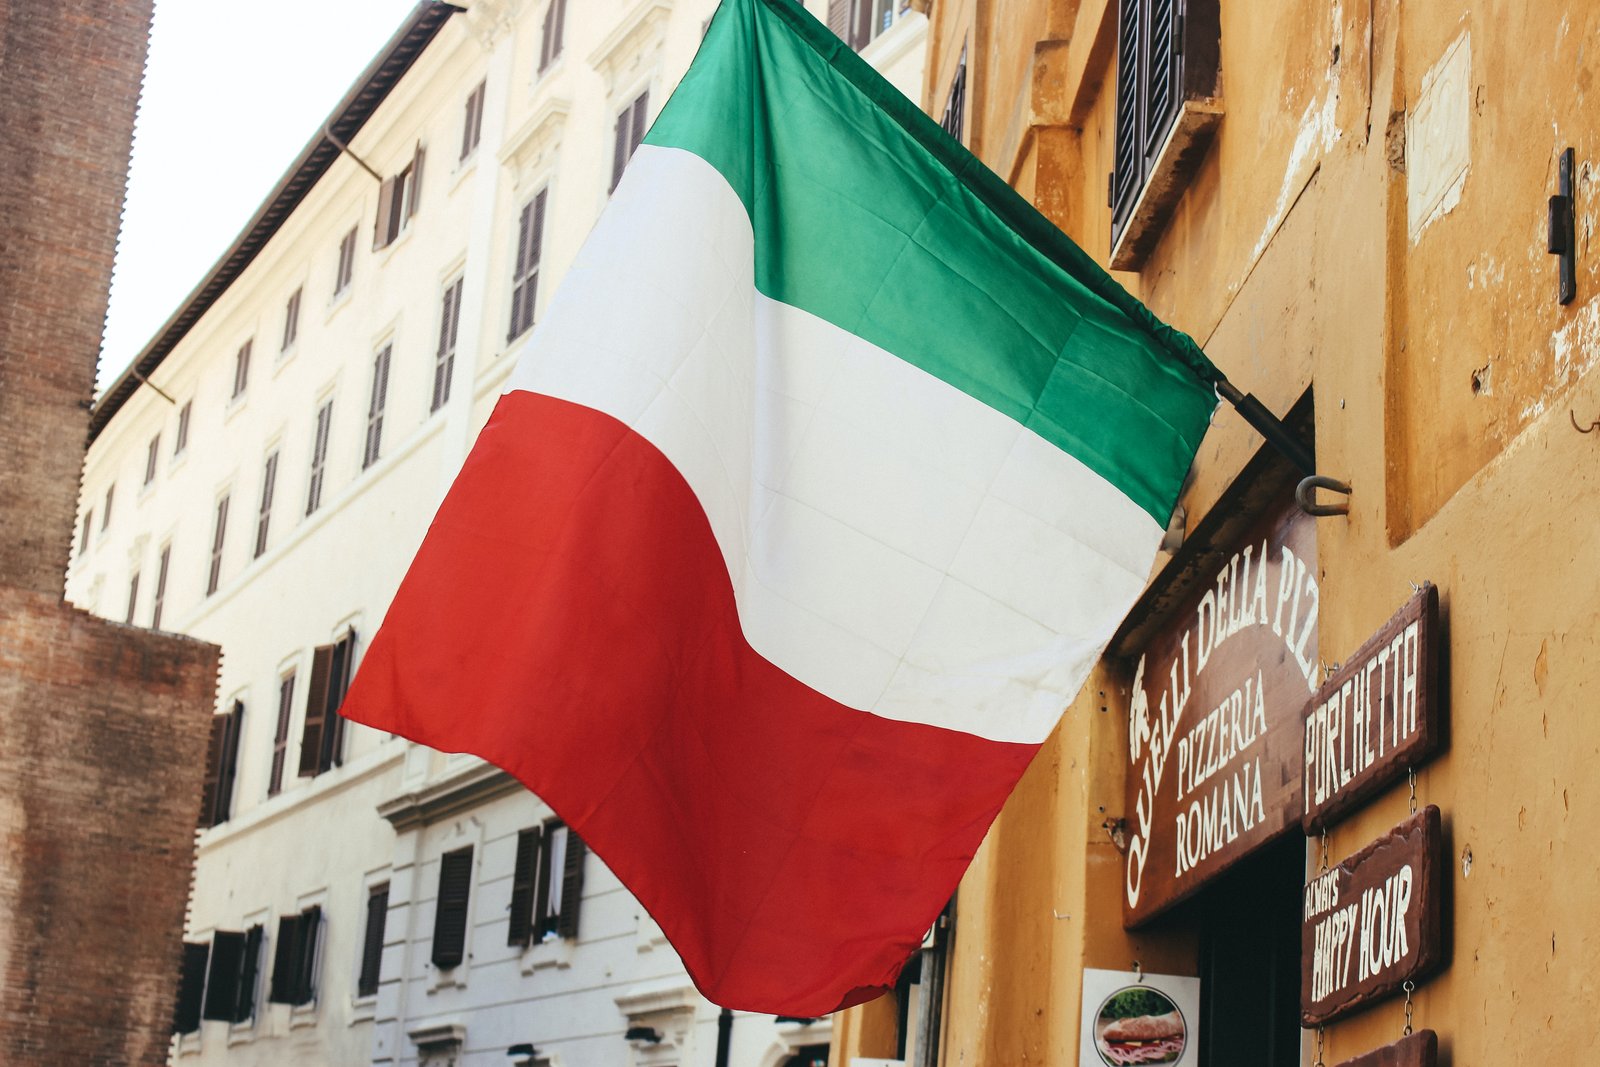 İtalyan bayrağı